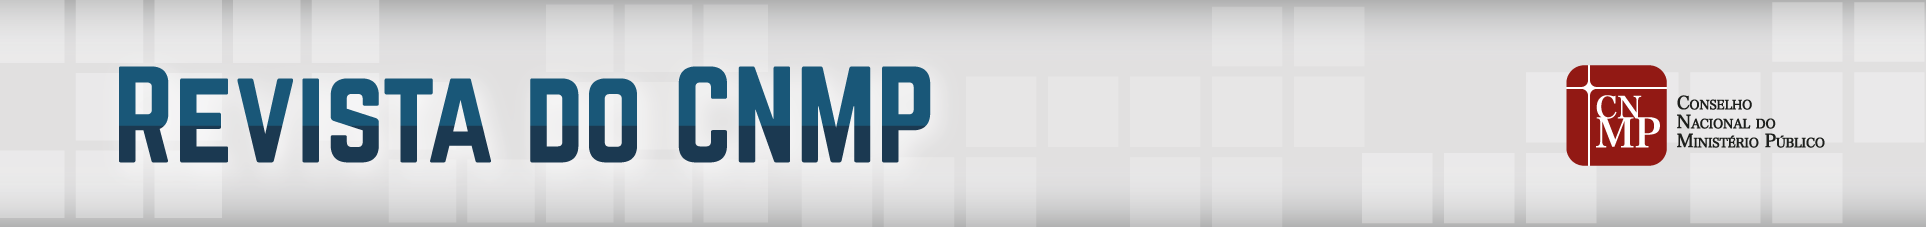 logo cnmp